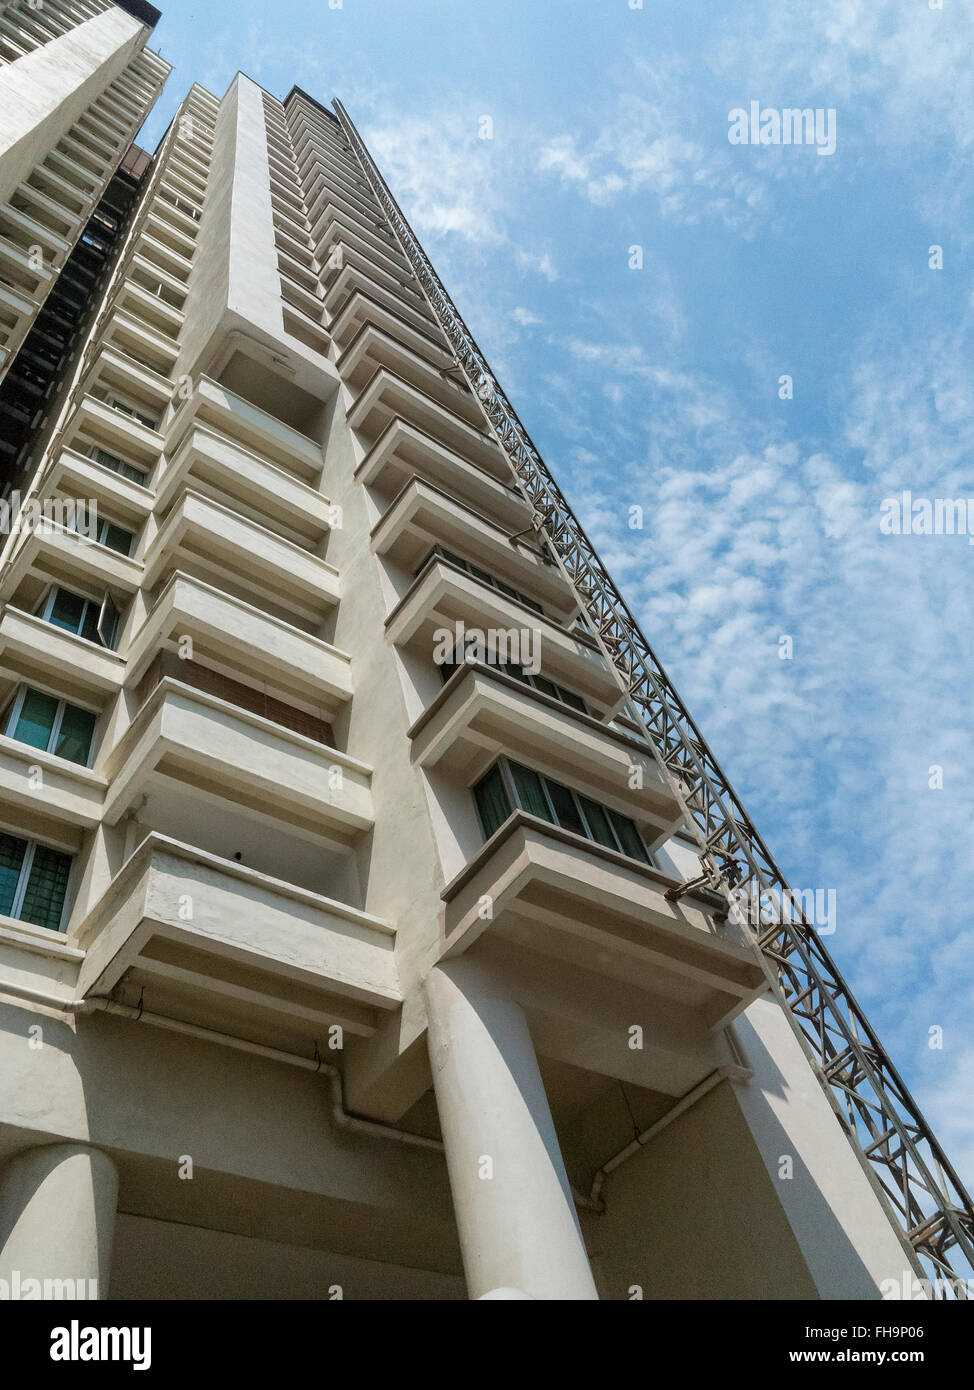 Skyward view of high-rise apartments in Kota Damansara, Petaling Jaya, Selangor, Malaysia Stock Photo